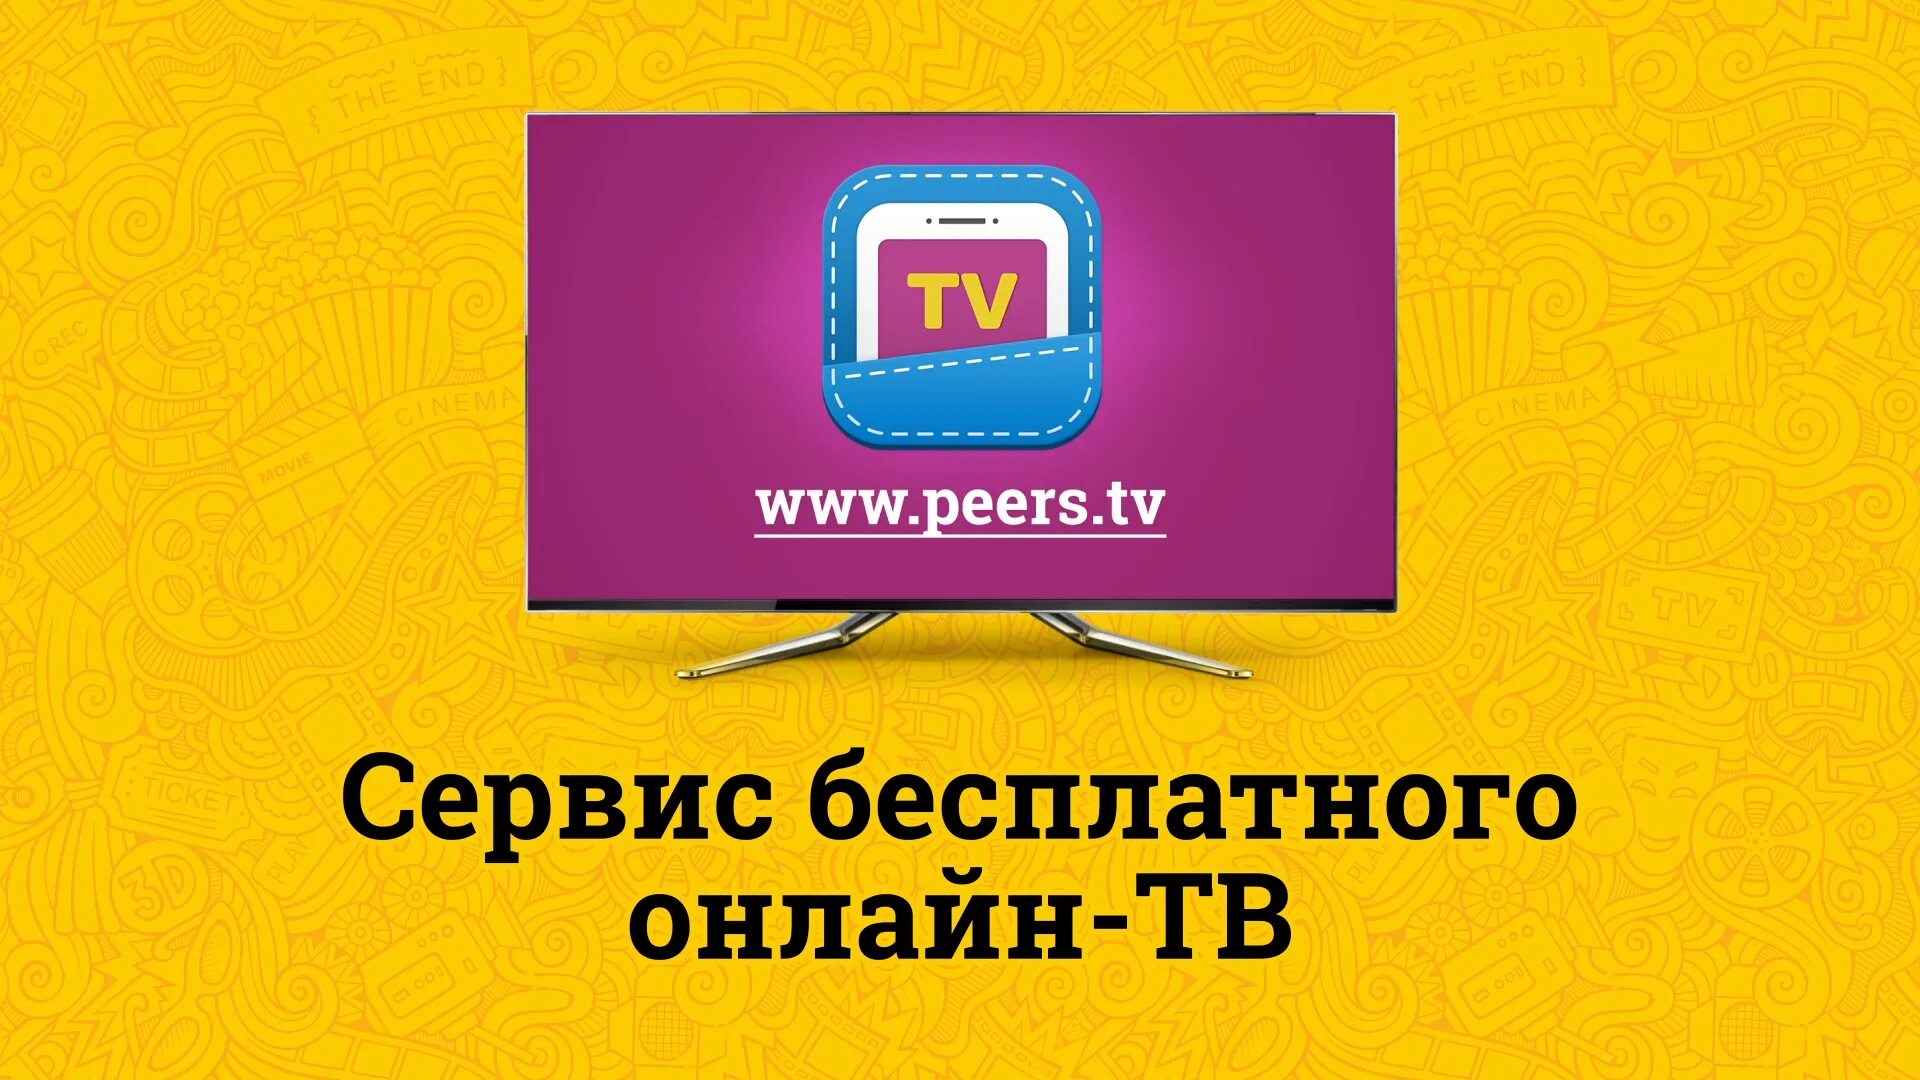 Peers windows. Peers TV. Peers TV логотип. Перс ТВ. Пирс ТВ каналы.